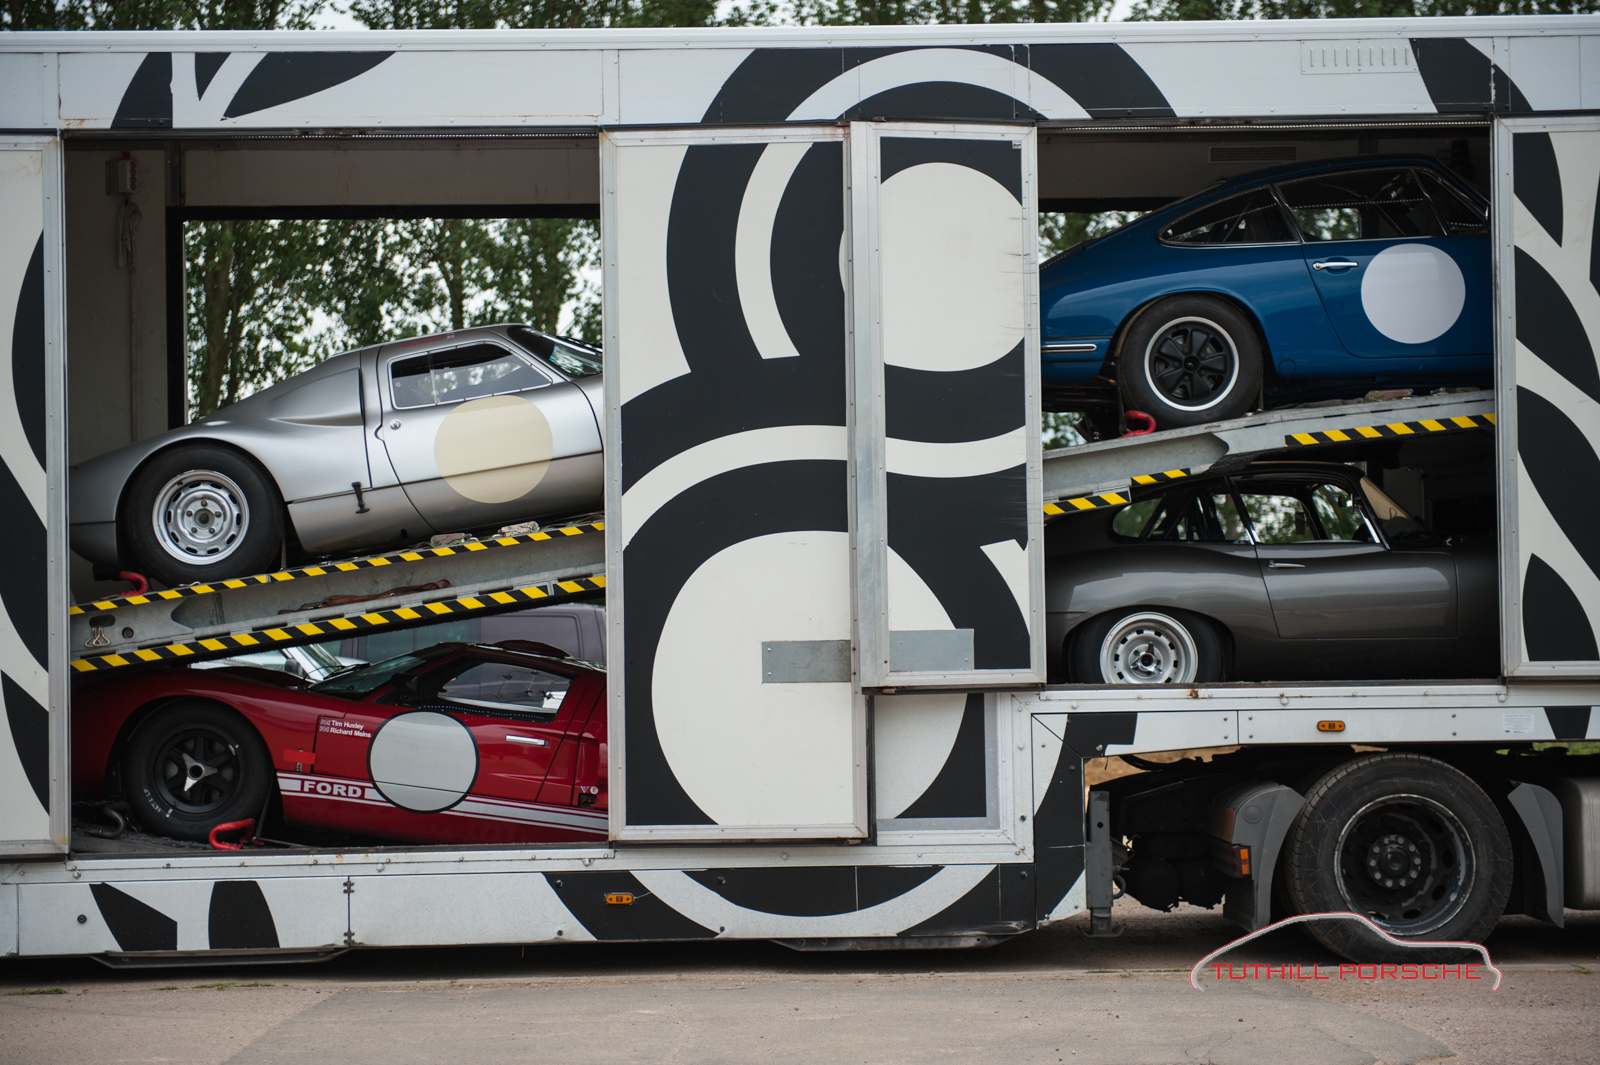 Richard’s GT Porsche Column: 3